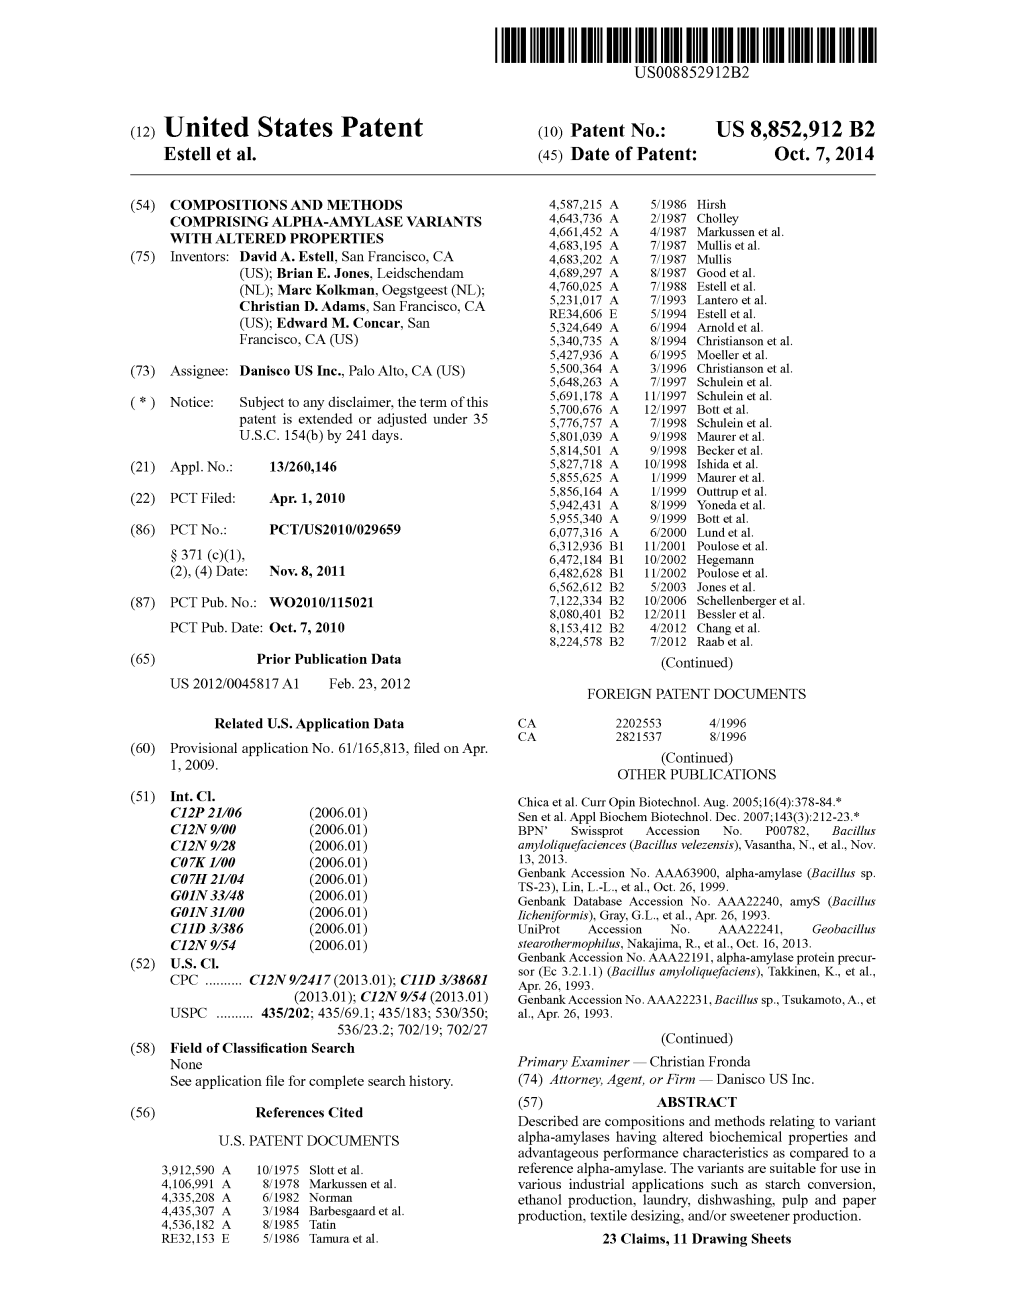 (12) United States Patent (10) Patent No.: US 8,852,912 B2 Estell Et Al